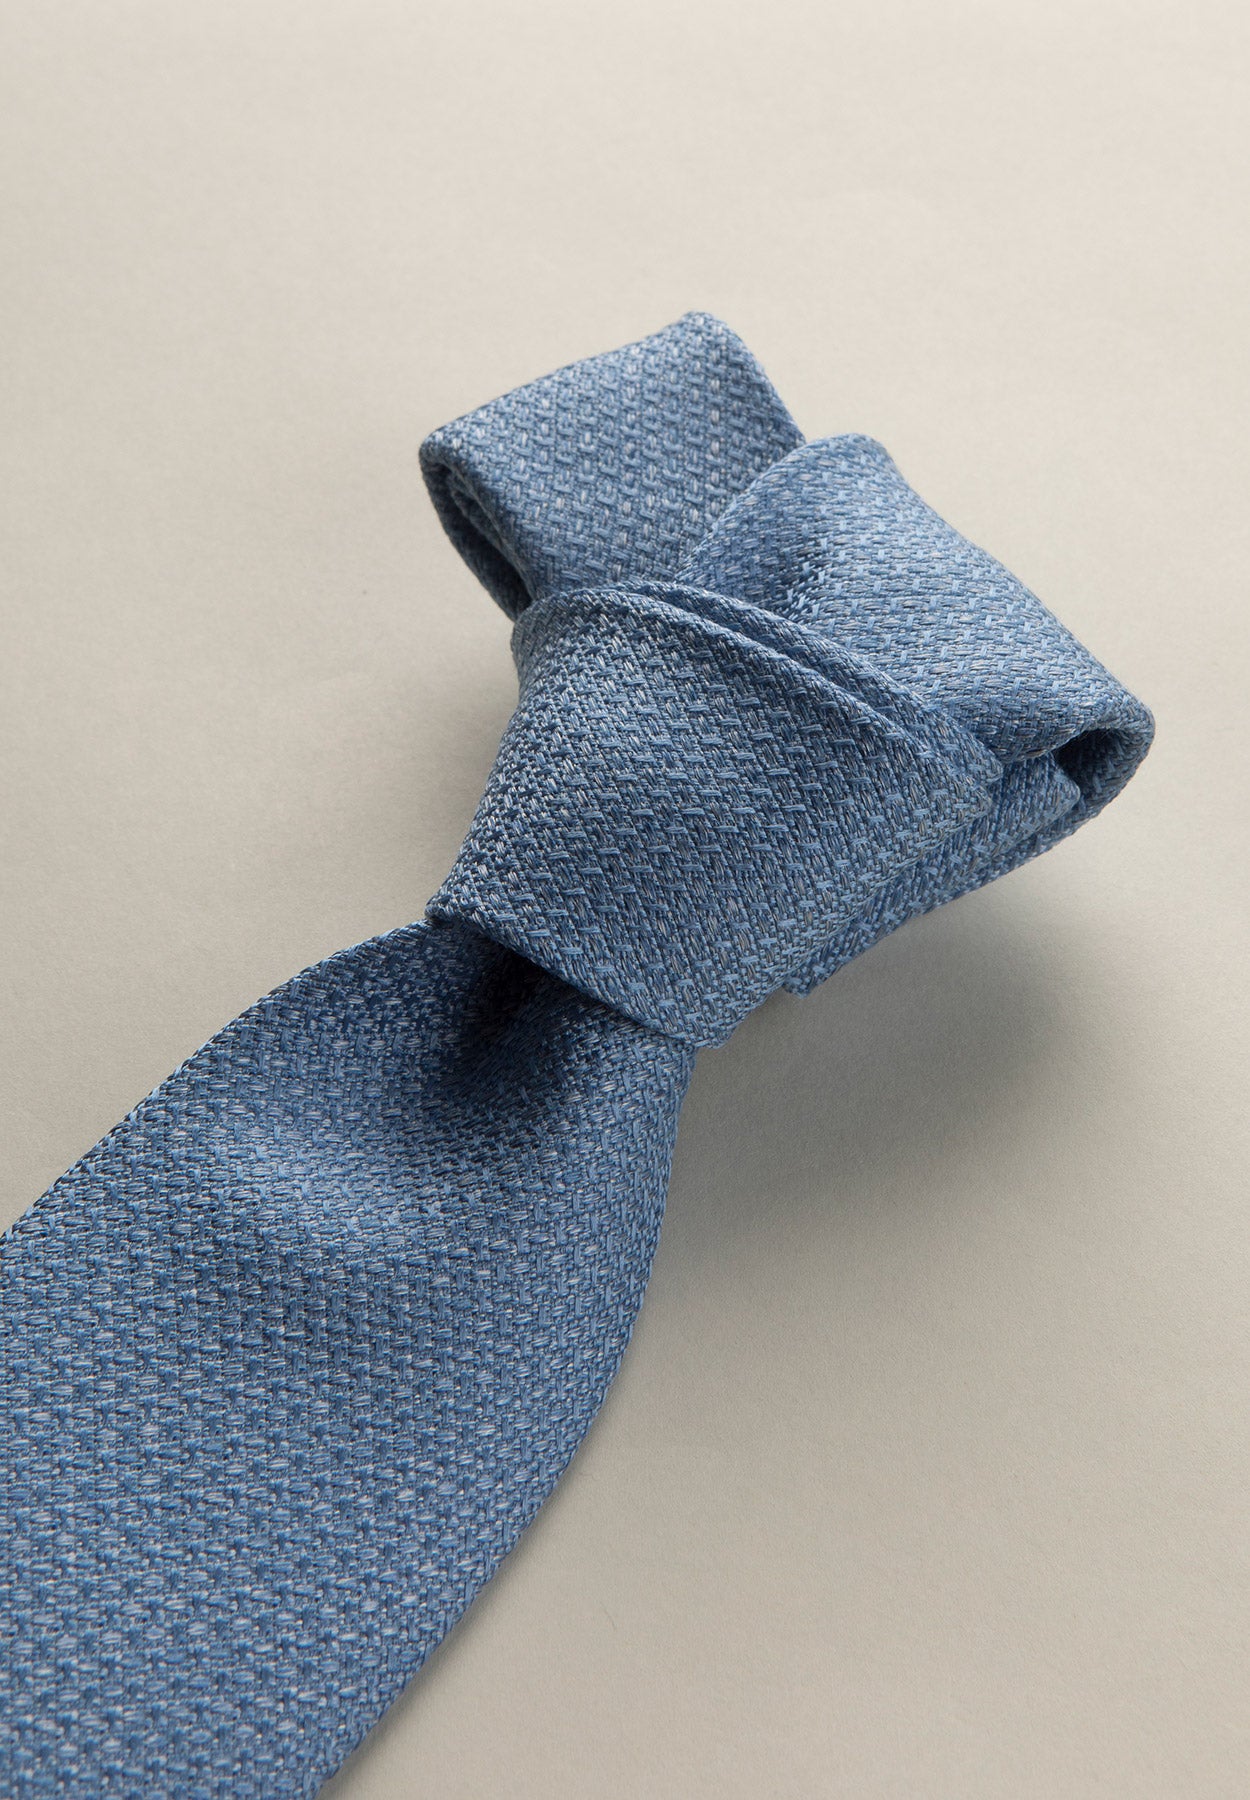 Cravatta azzurro scuro armatura seta cotone